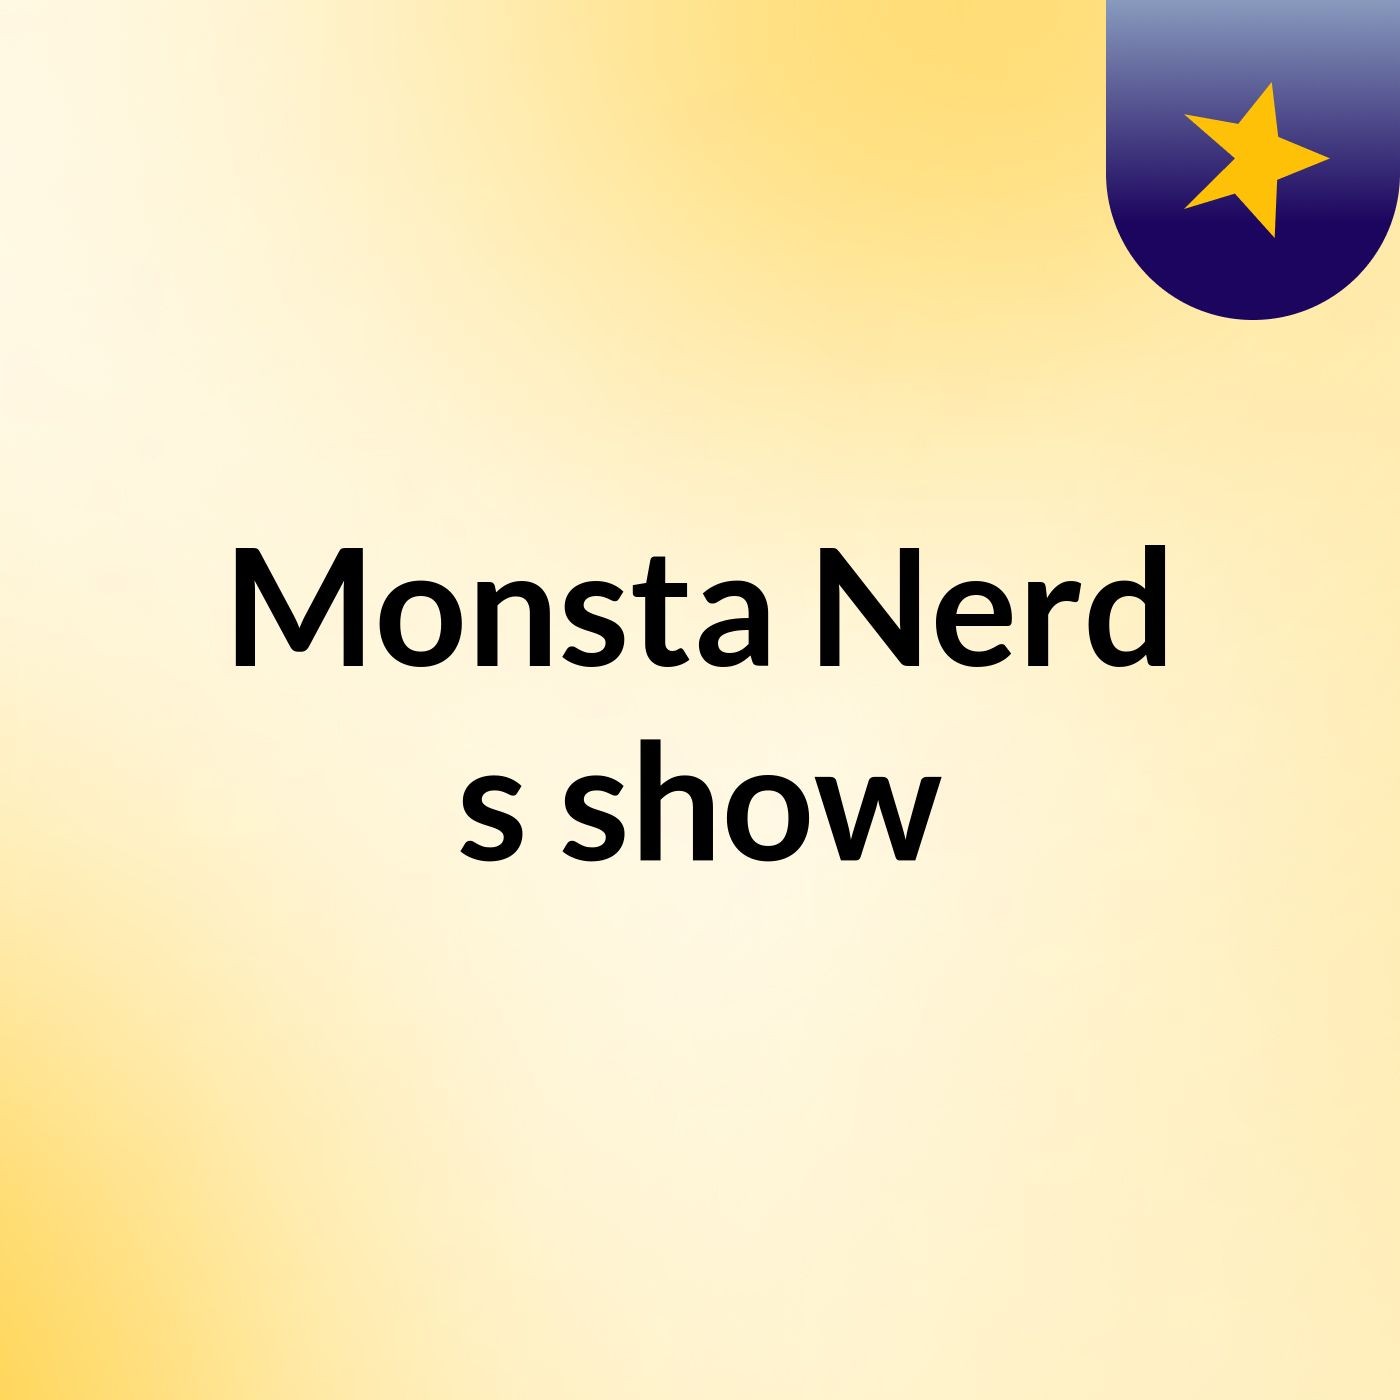 Monsta Nerd's show